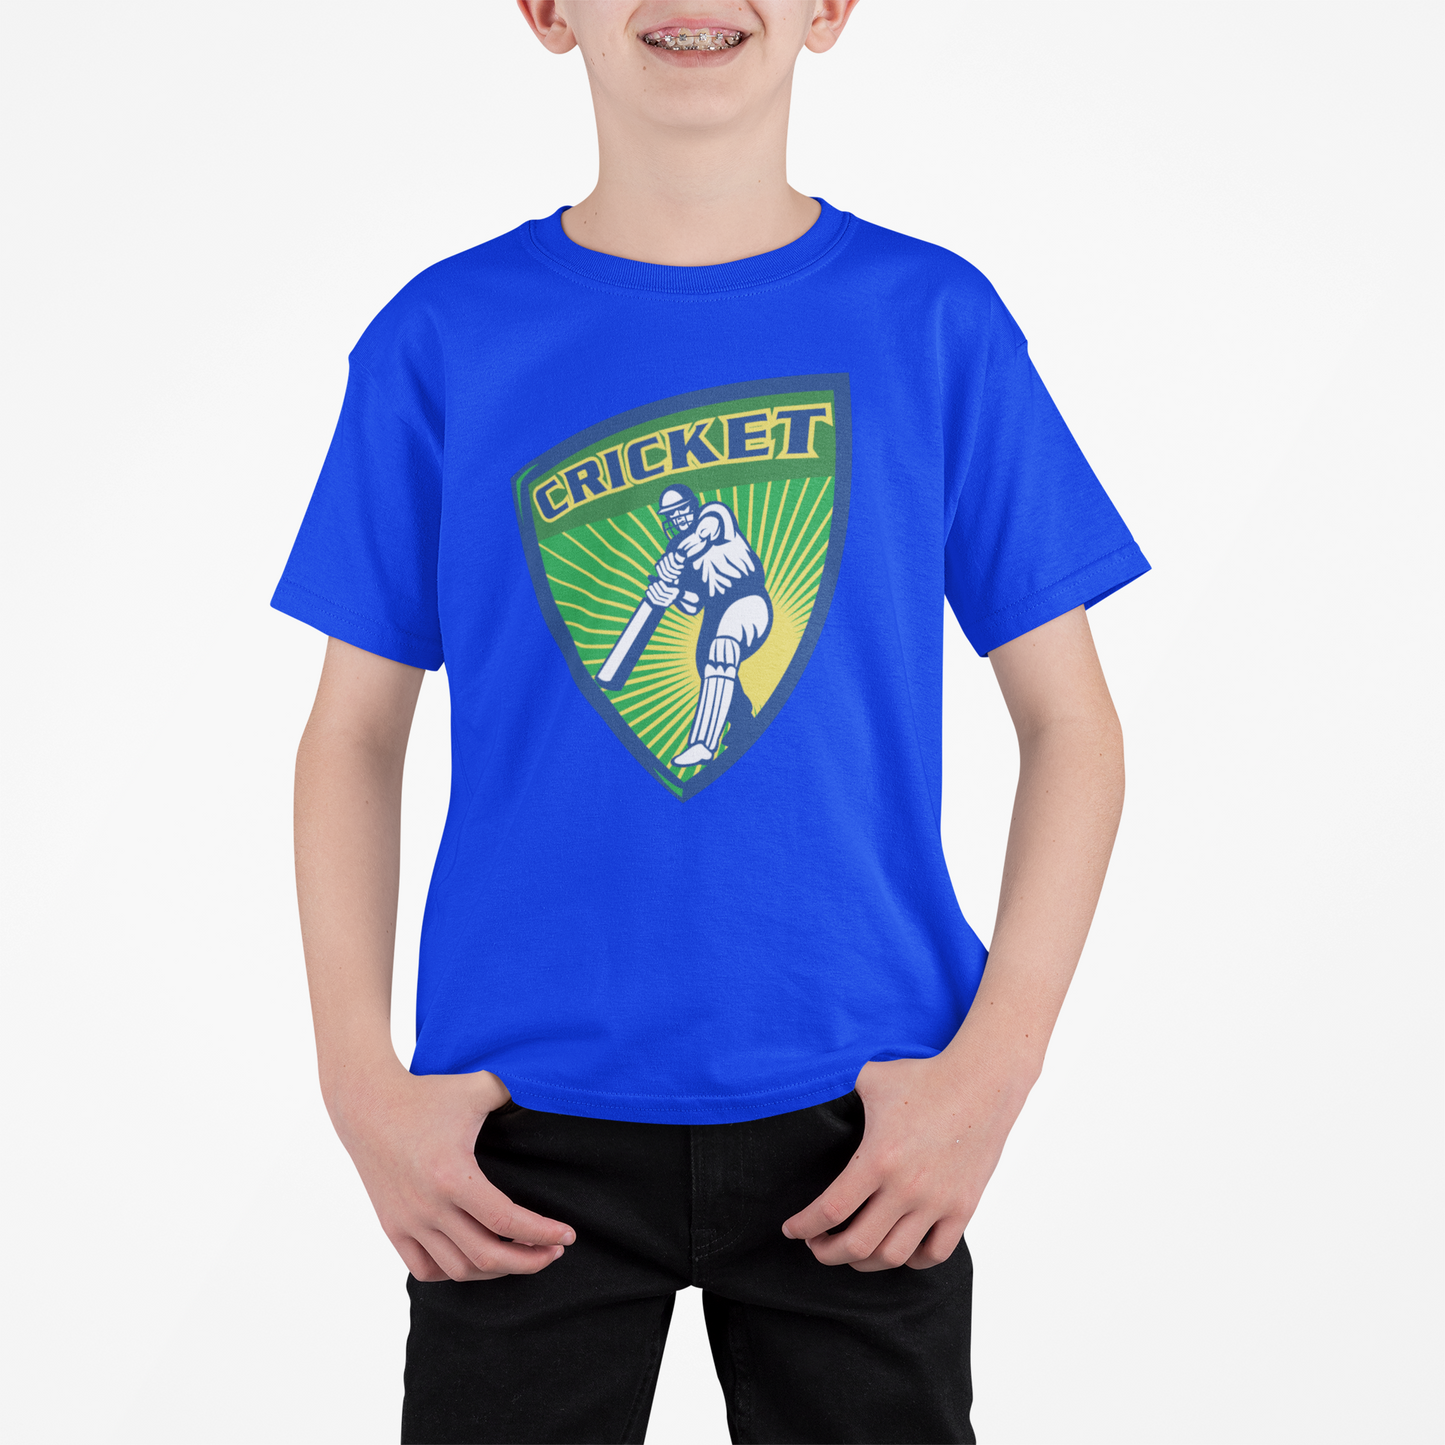 Cricketer T Shirt for Kids D11